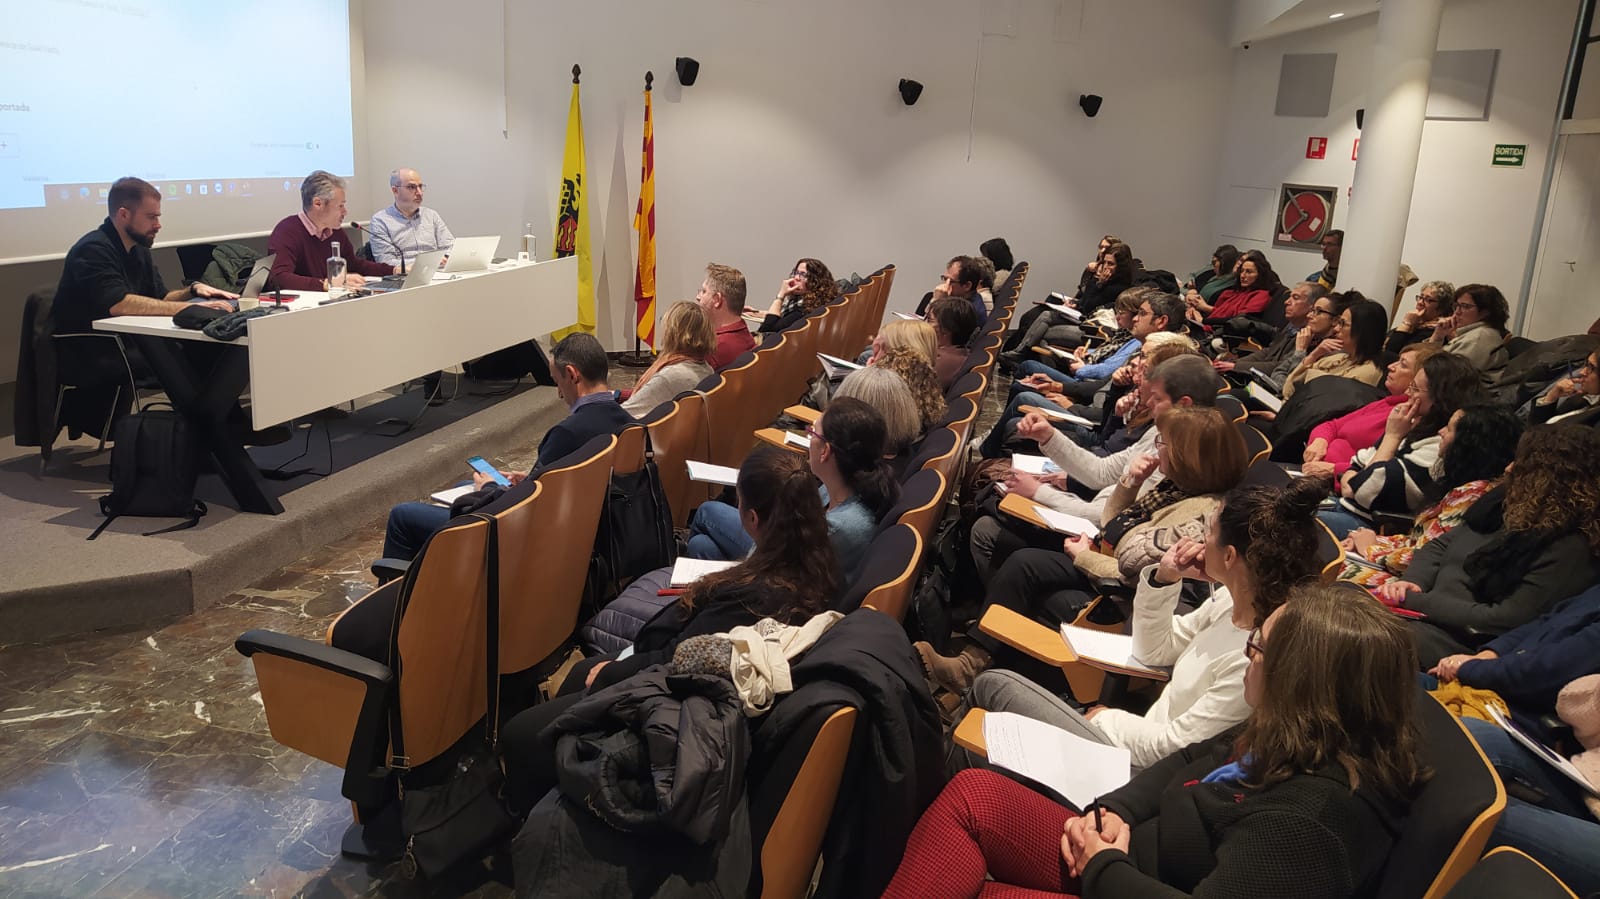 Persones assitents a la sessió de presentació del gestor d'expedients a Pallars Jussà